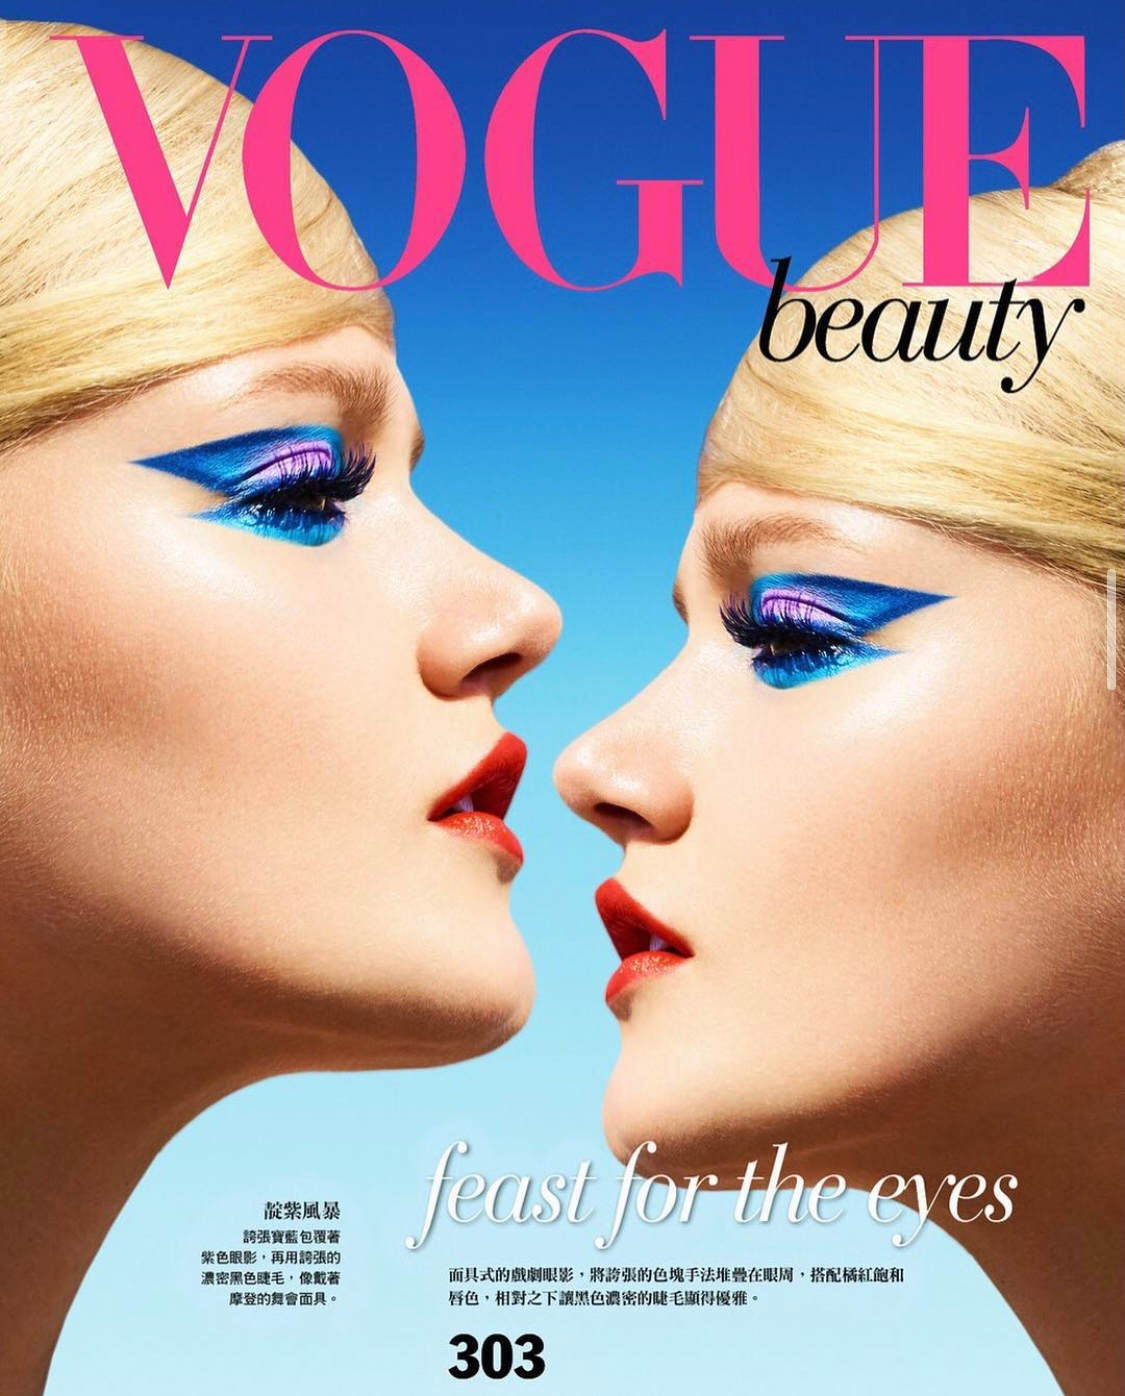 Vogue Beauty - Korea